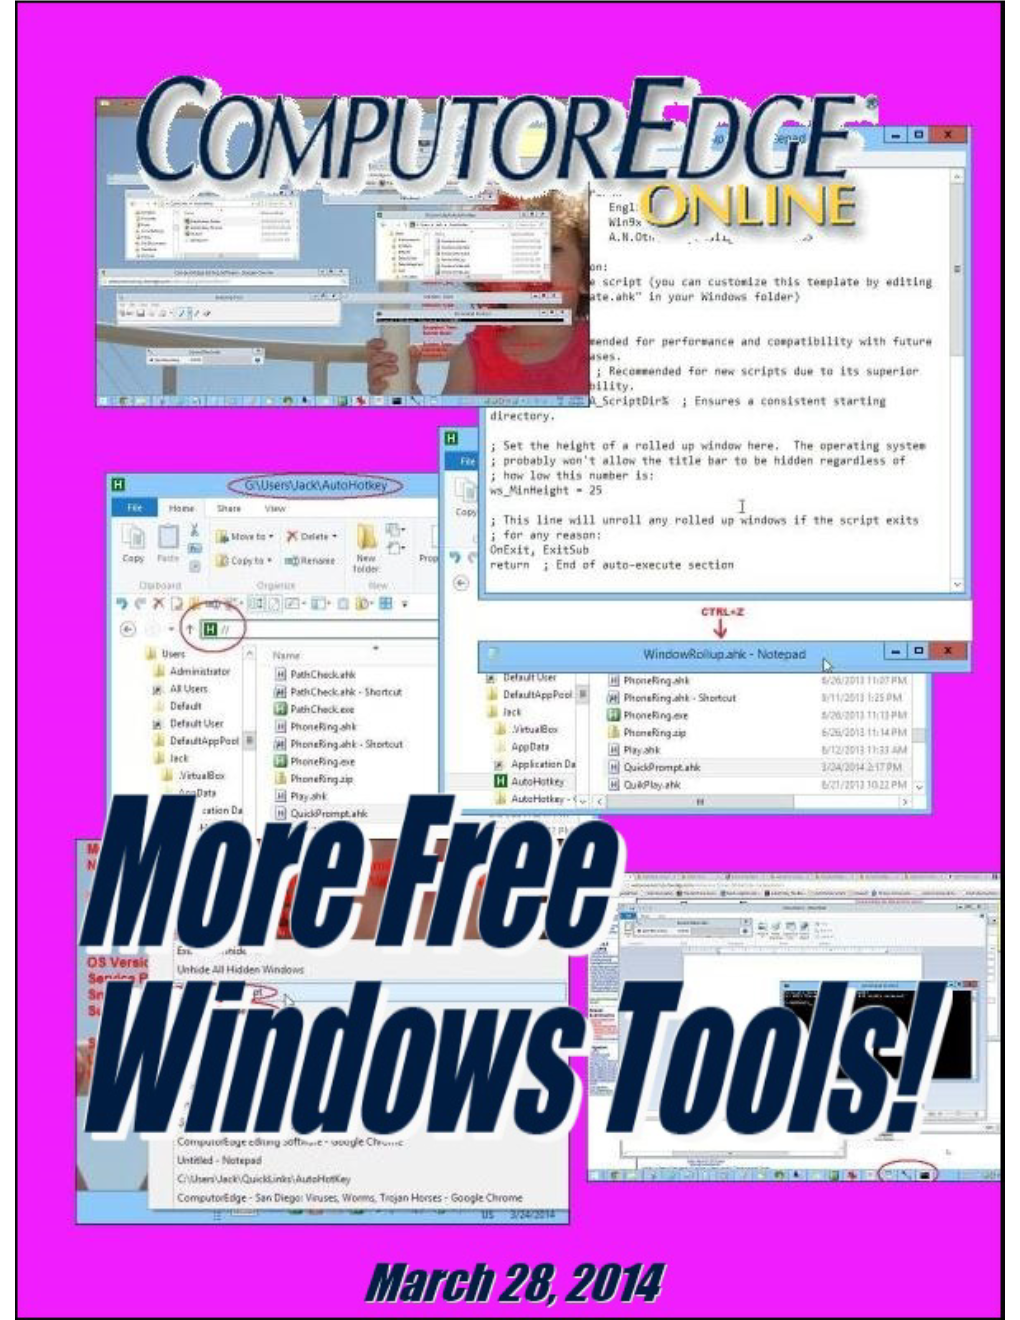 Computoredge 03/28/14: More Free Windows Tools!